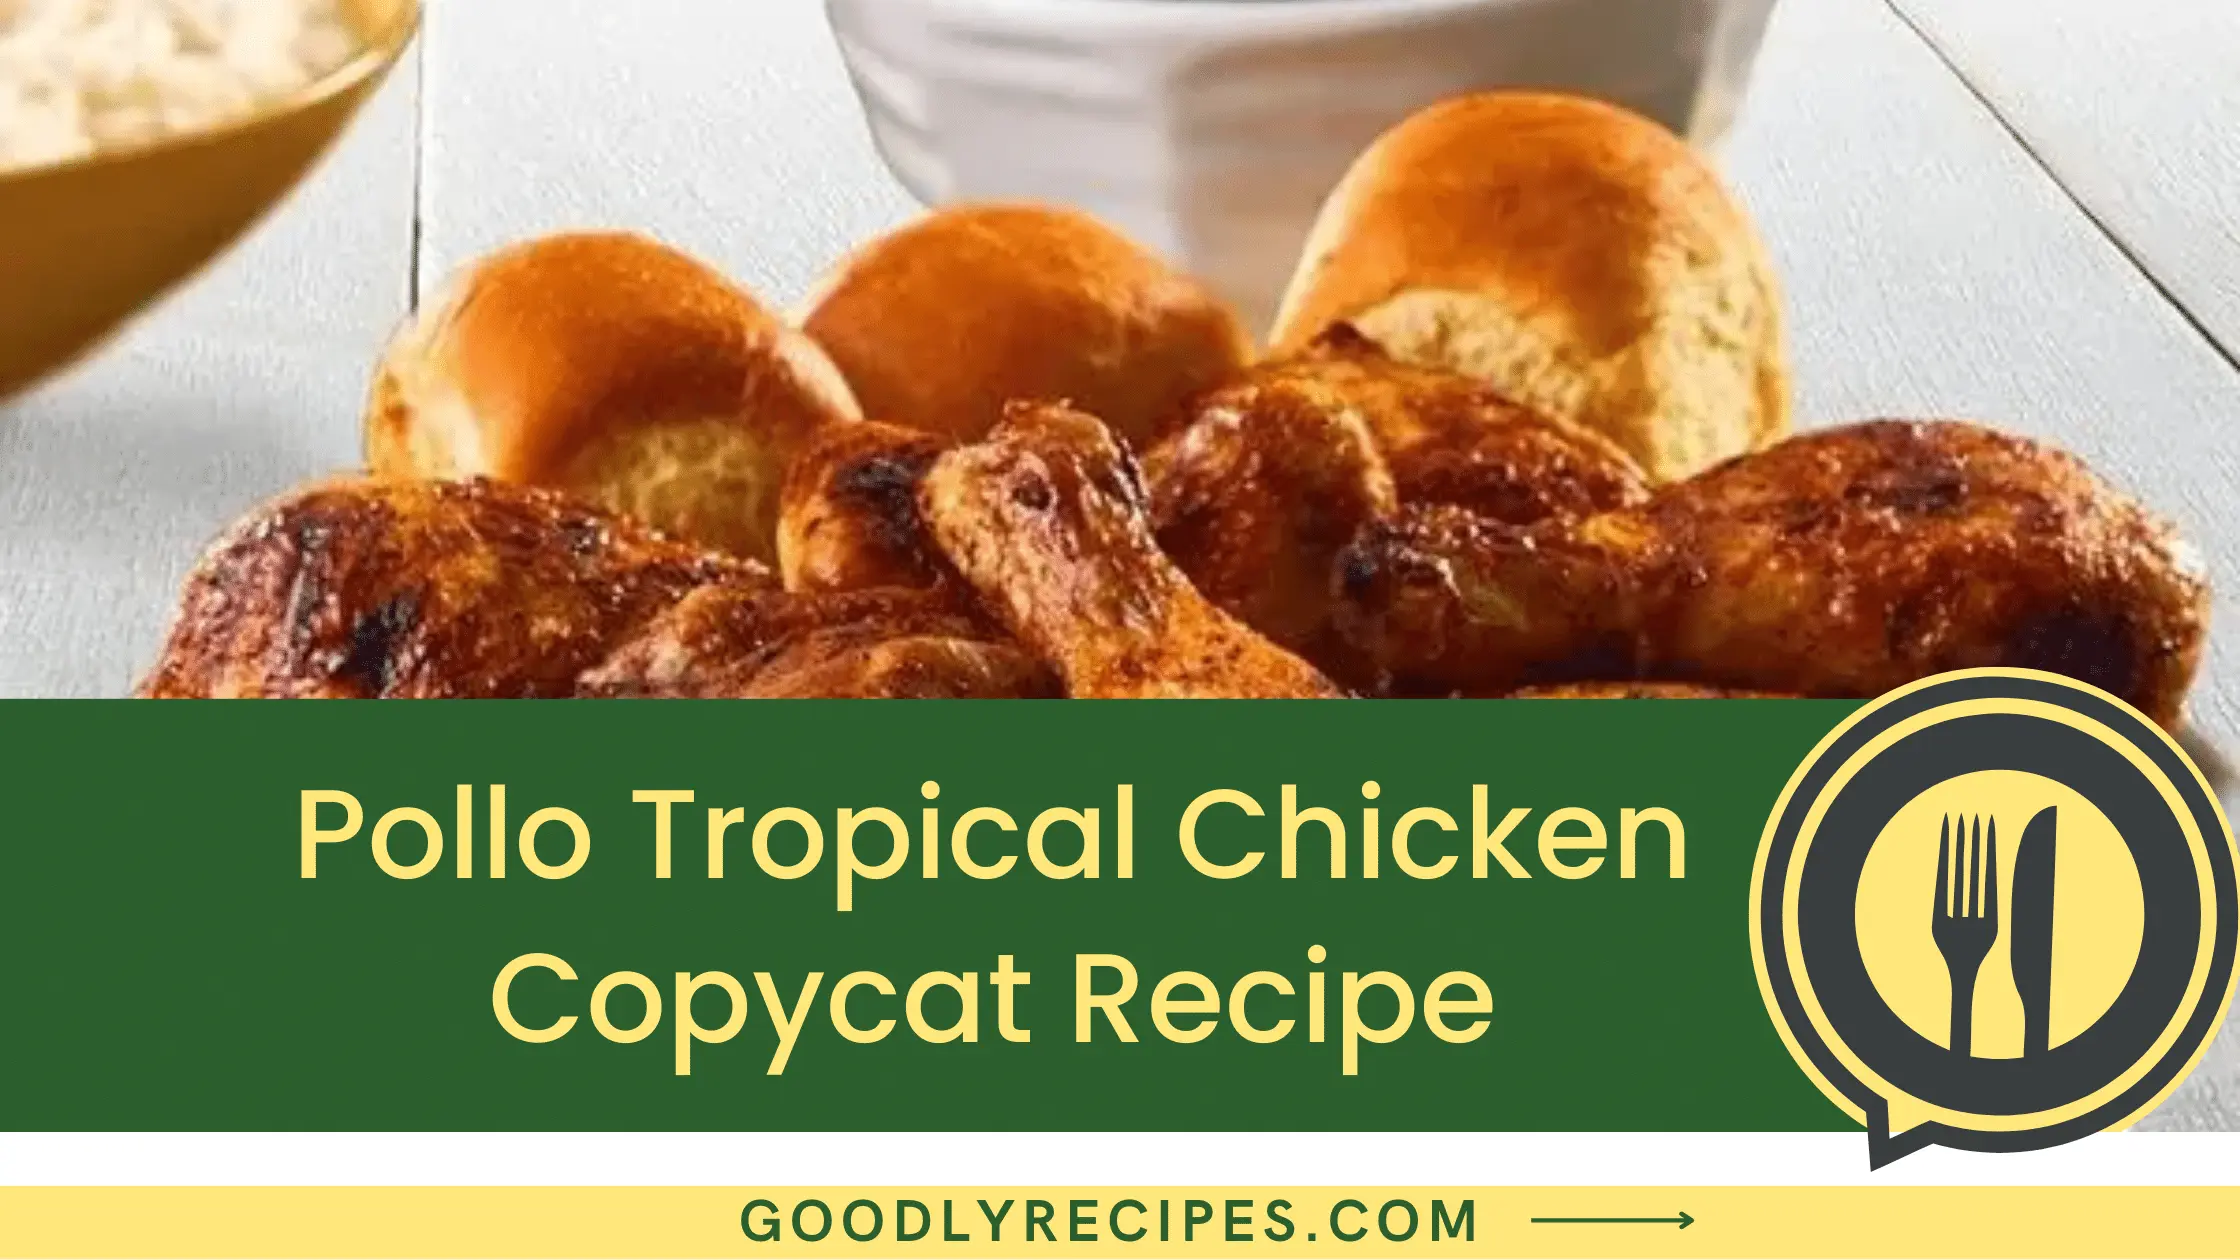 Pollo Tropical Chicken Copycat Recipe